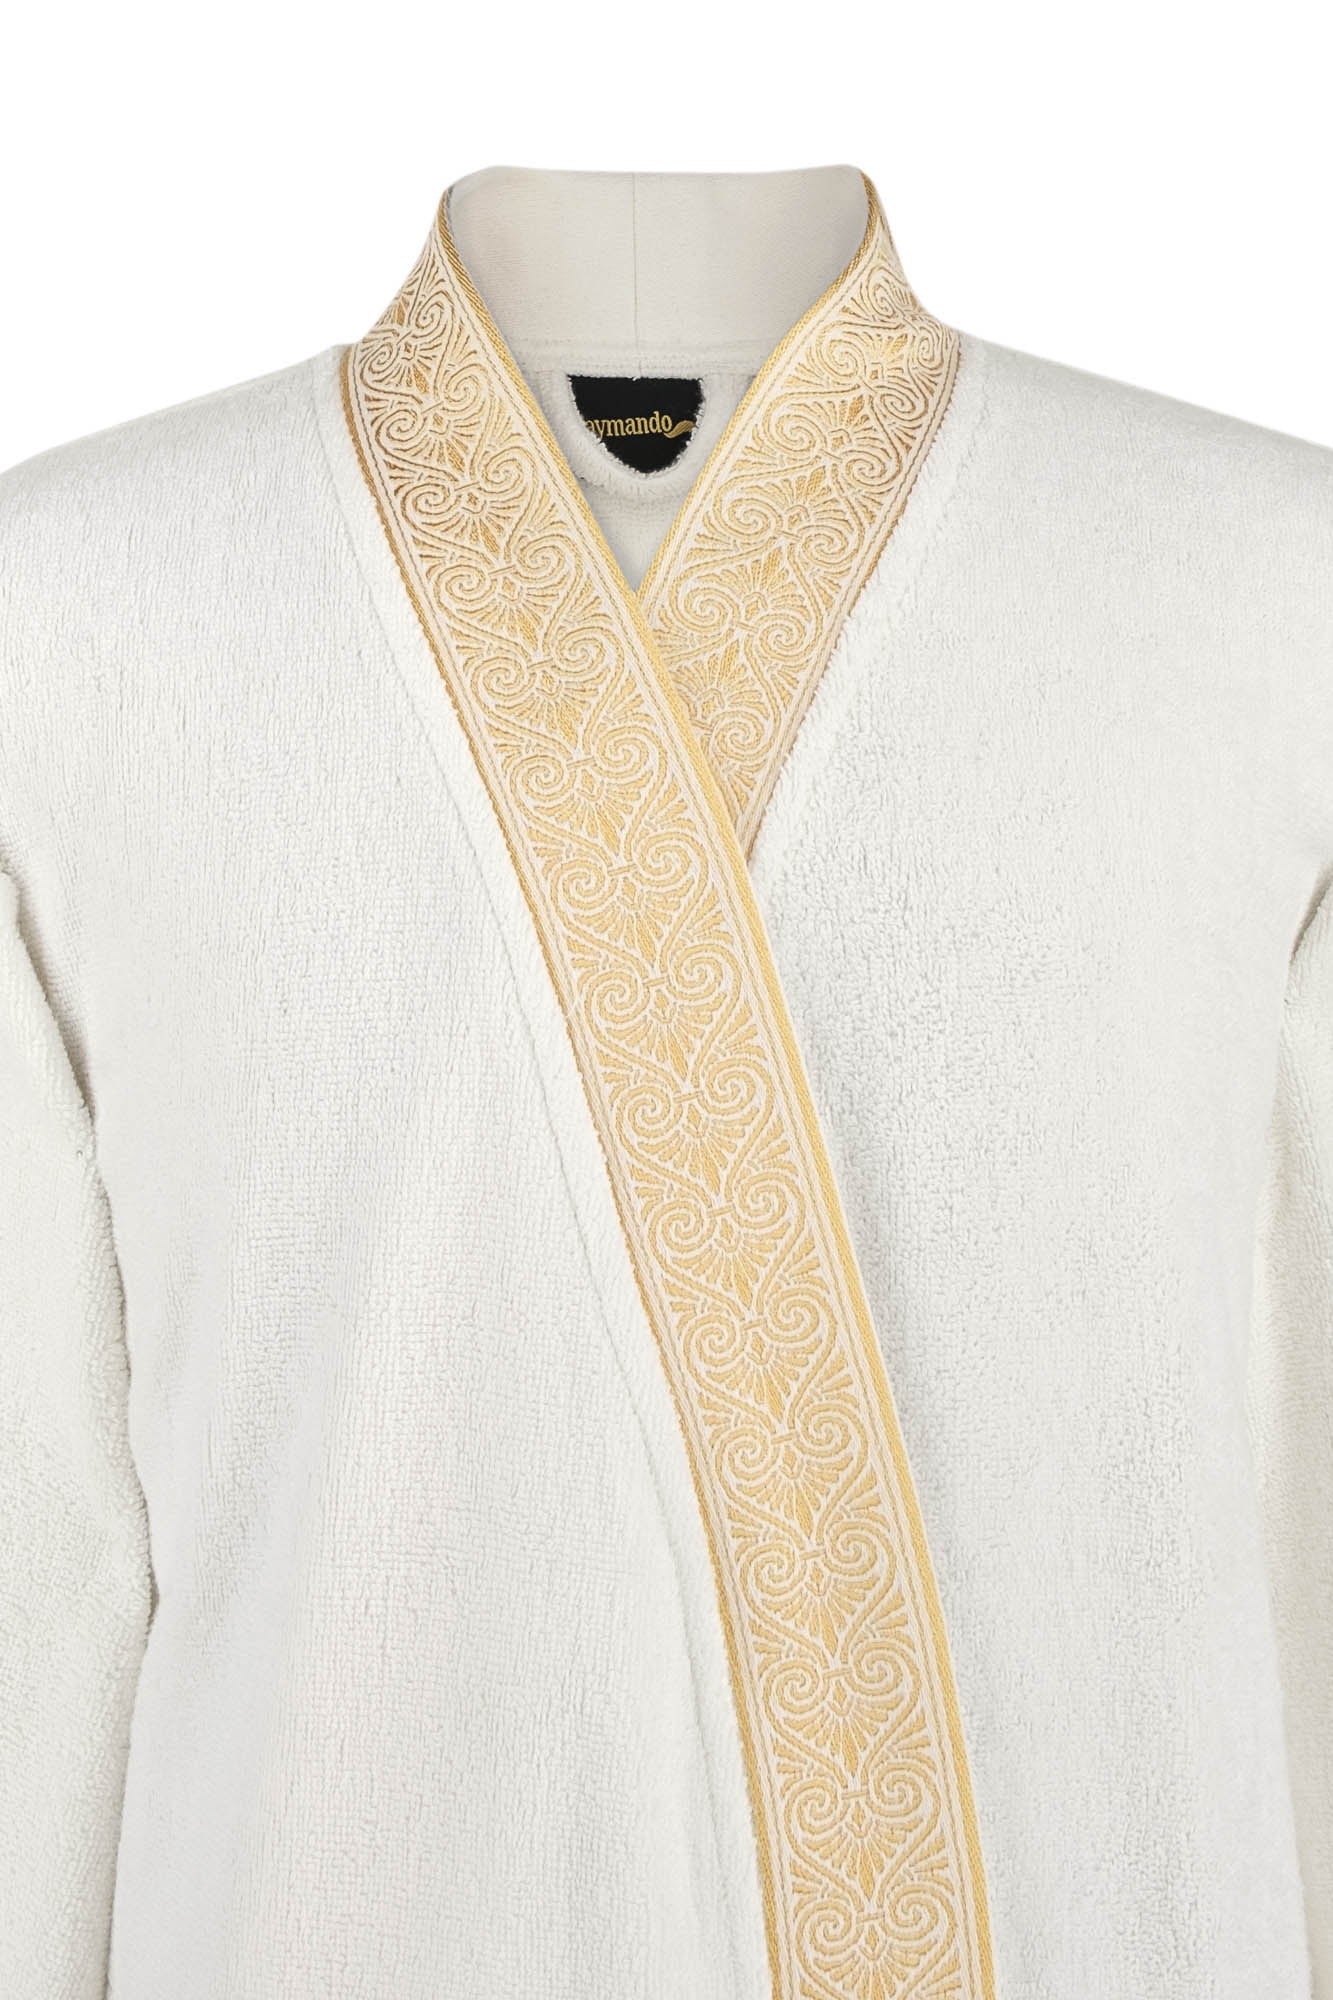 Luxury Bathrobe Kimono white-gold